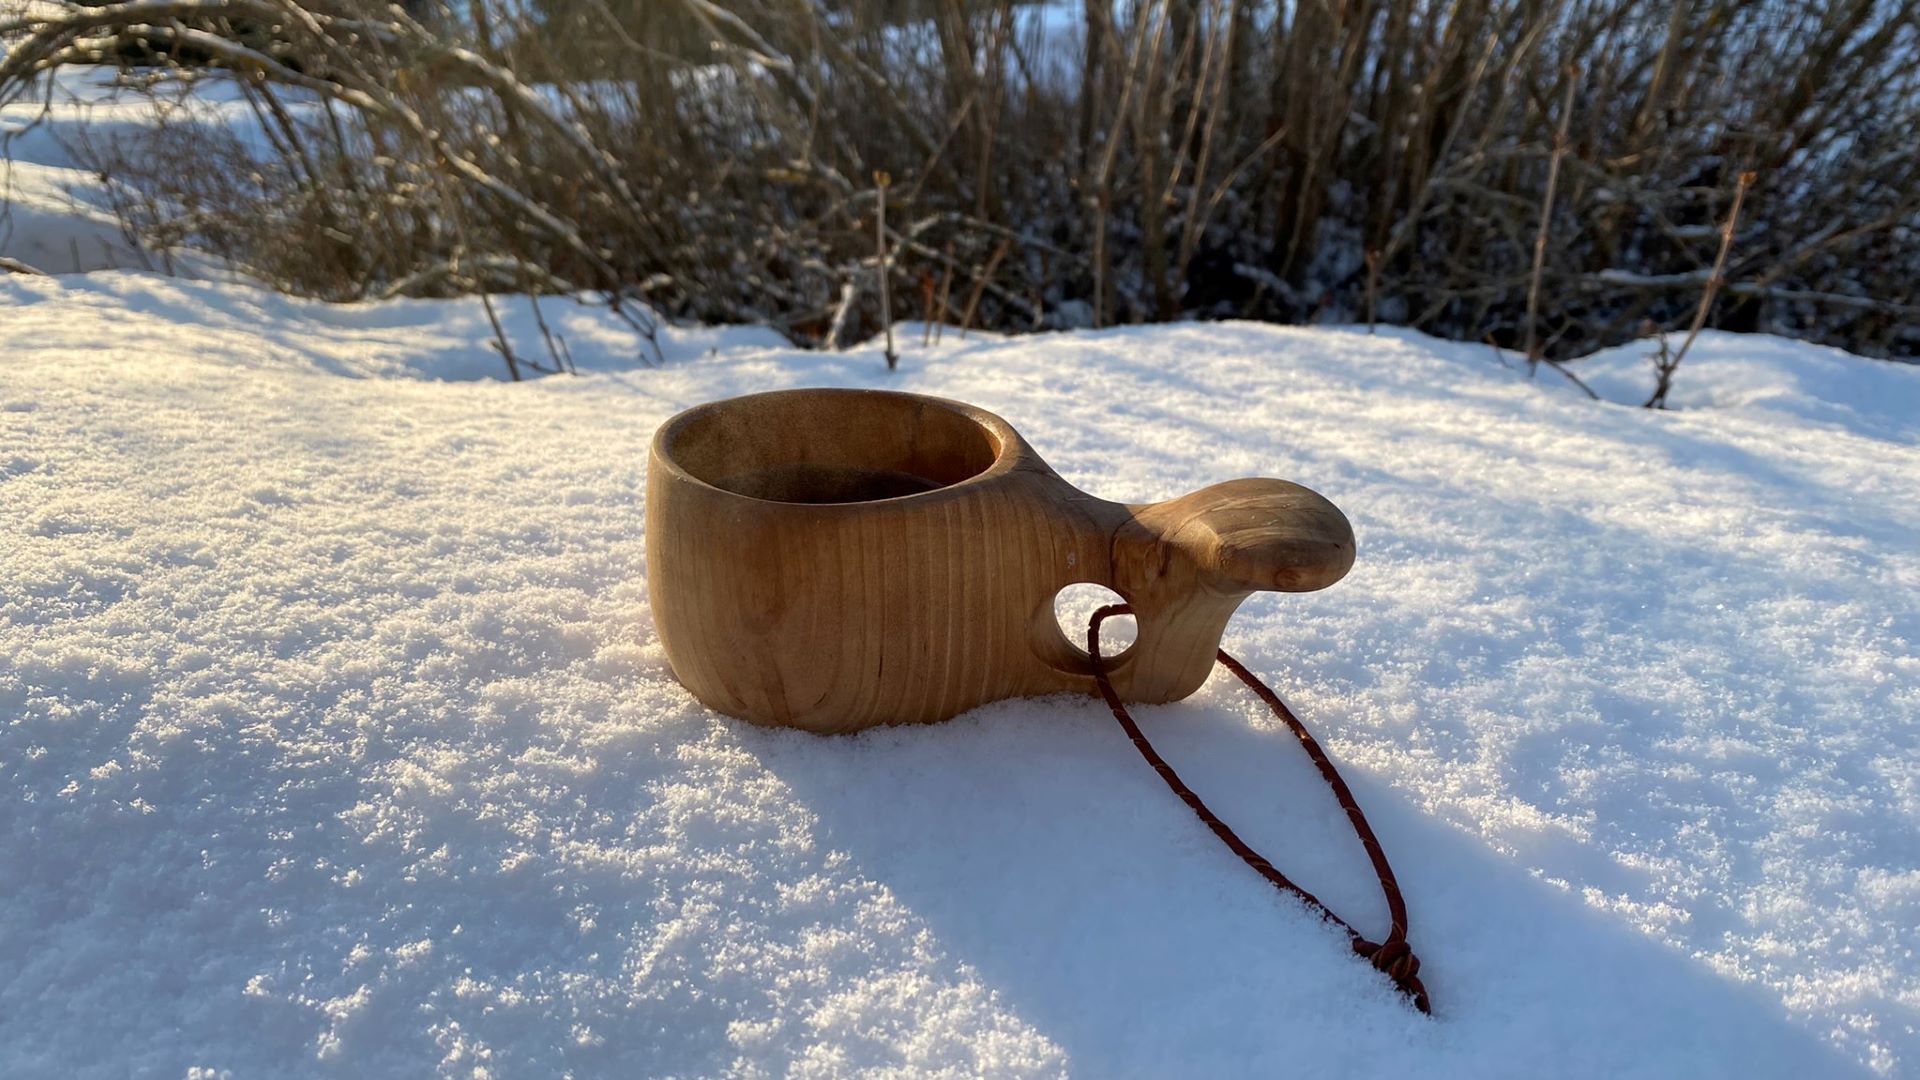 https://www.outinthenature.com/wp-content/uploads/2022/03/Finnish-kuksa-wooden-cup.jpeg